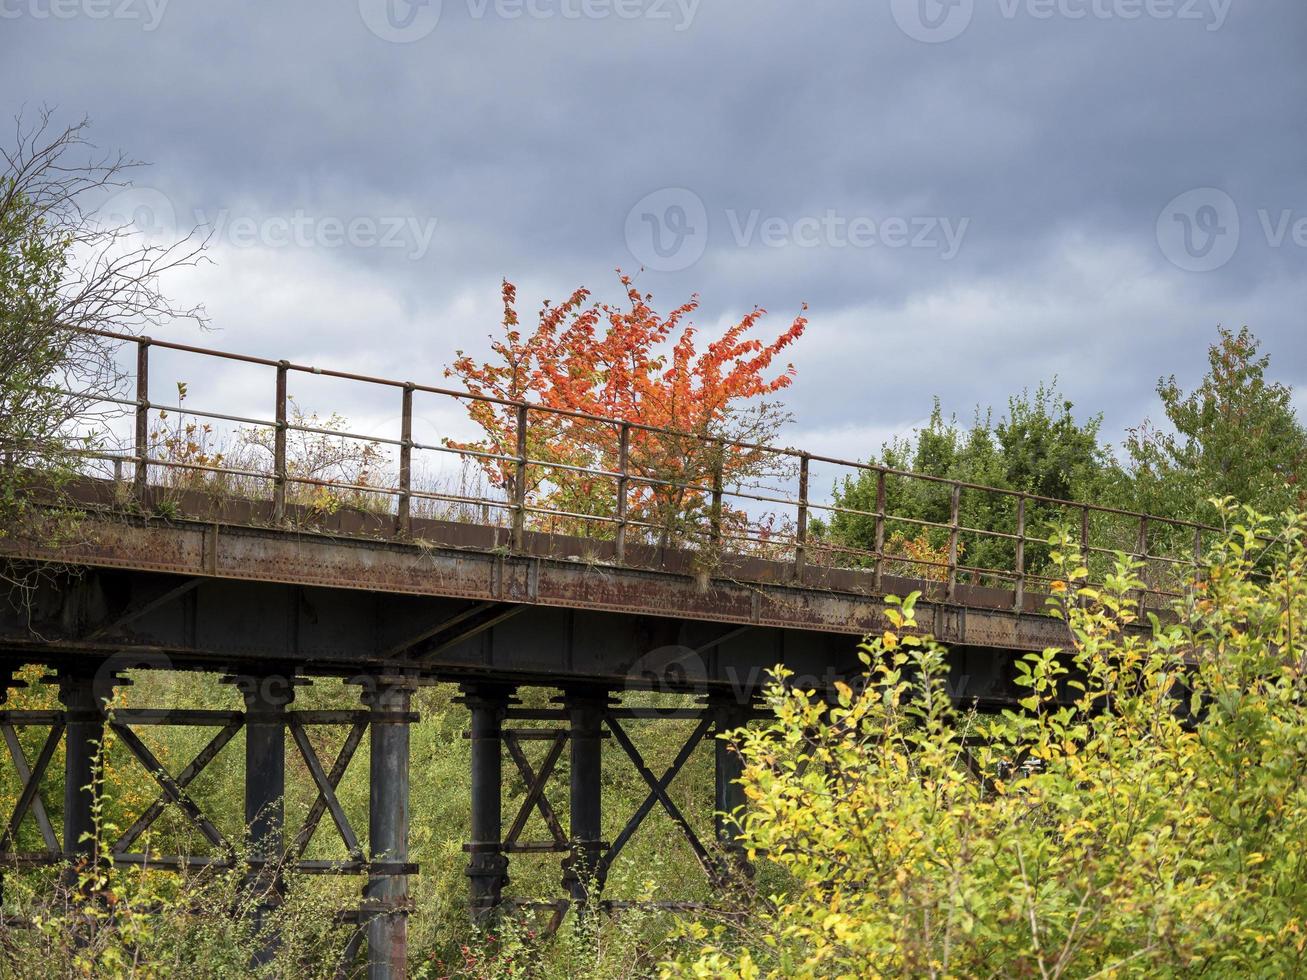 cores do outono e uma linha férrea desativada na reserva natural de fairburn ings, west yorkshire, inglaterra foto